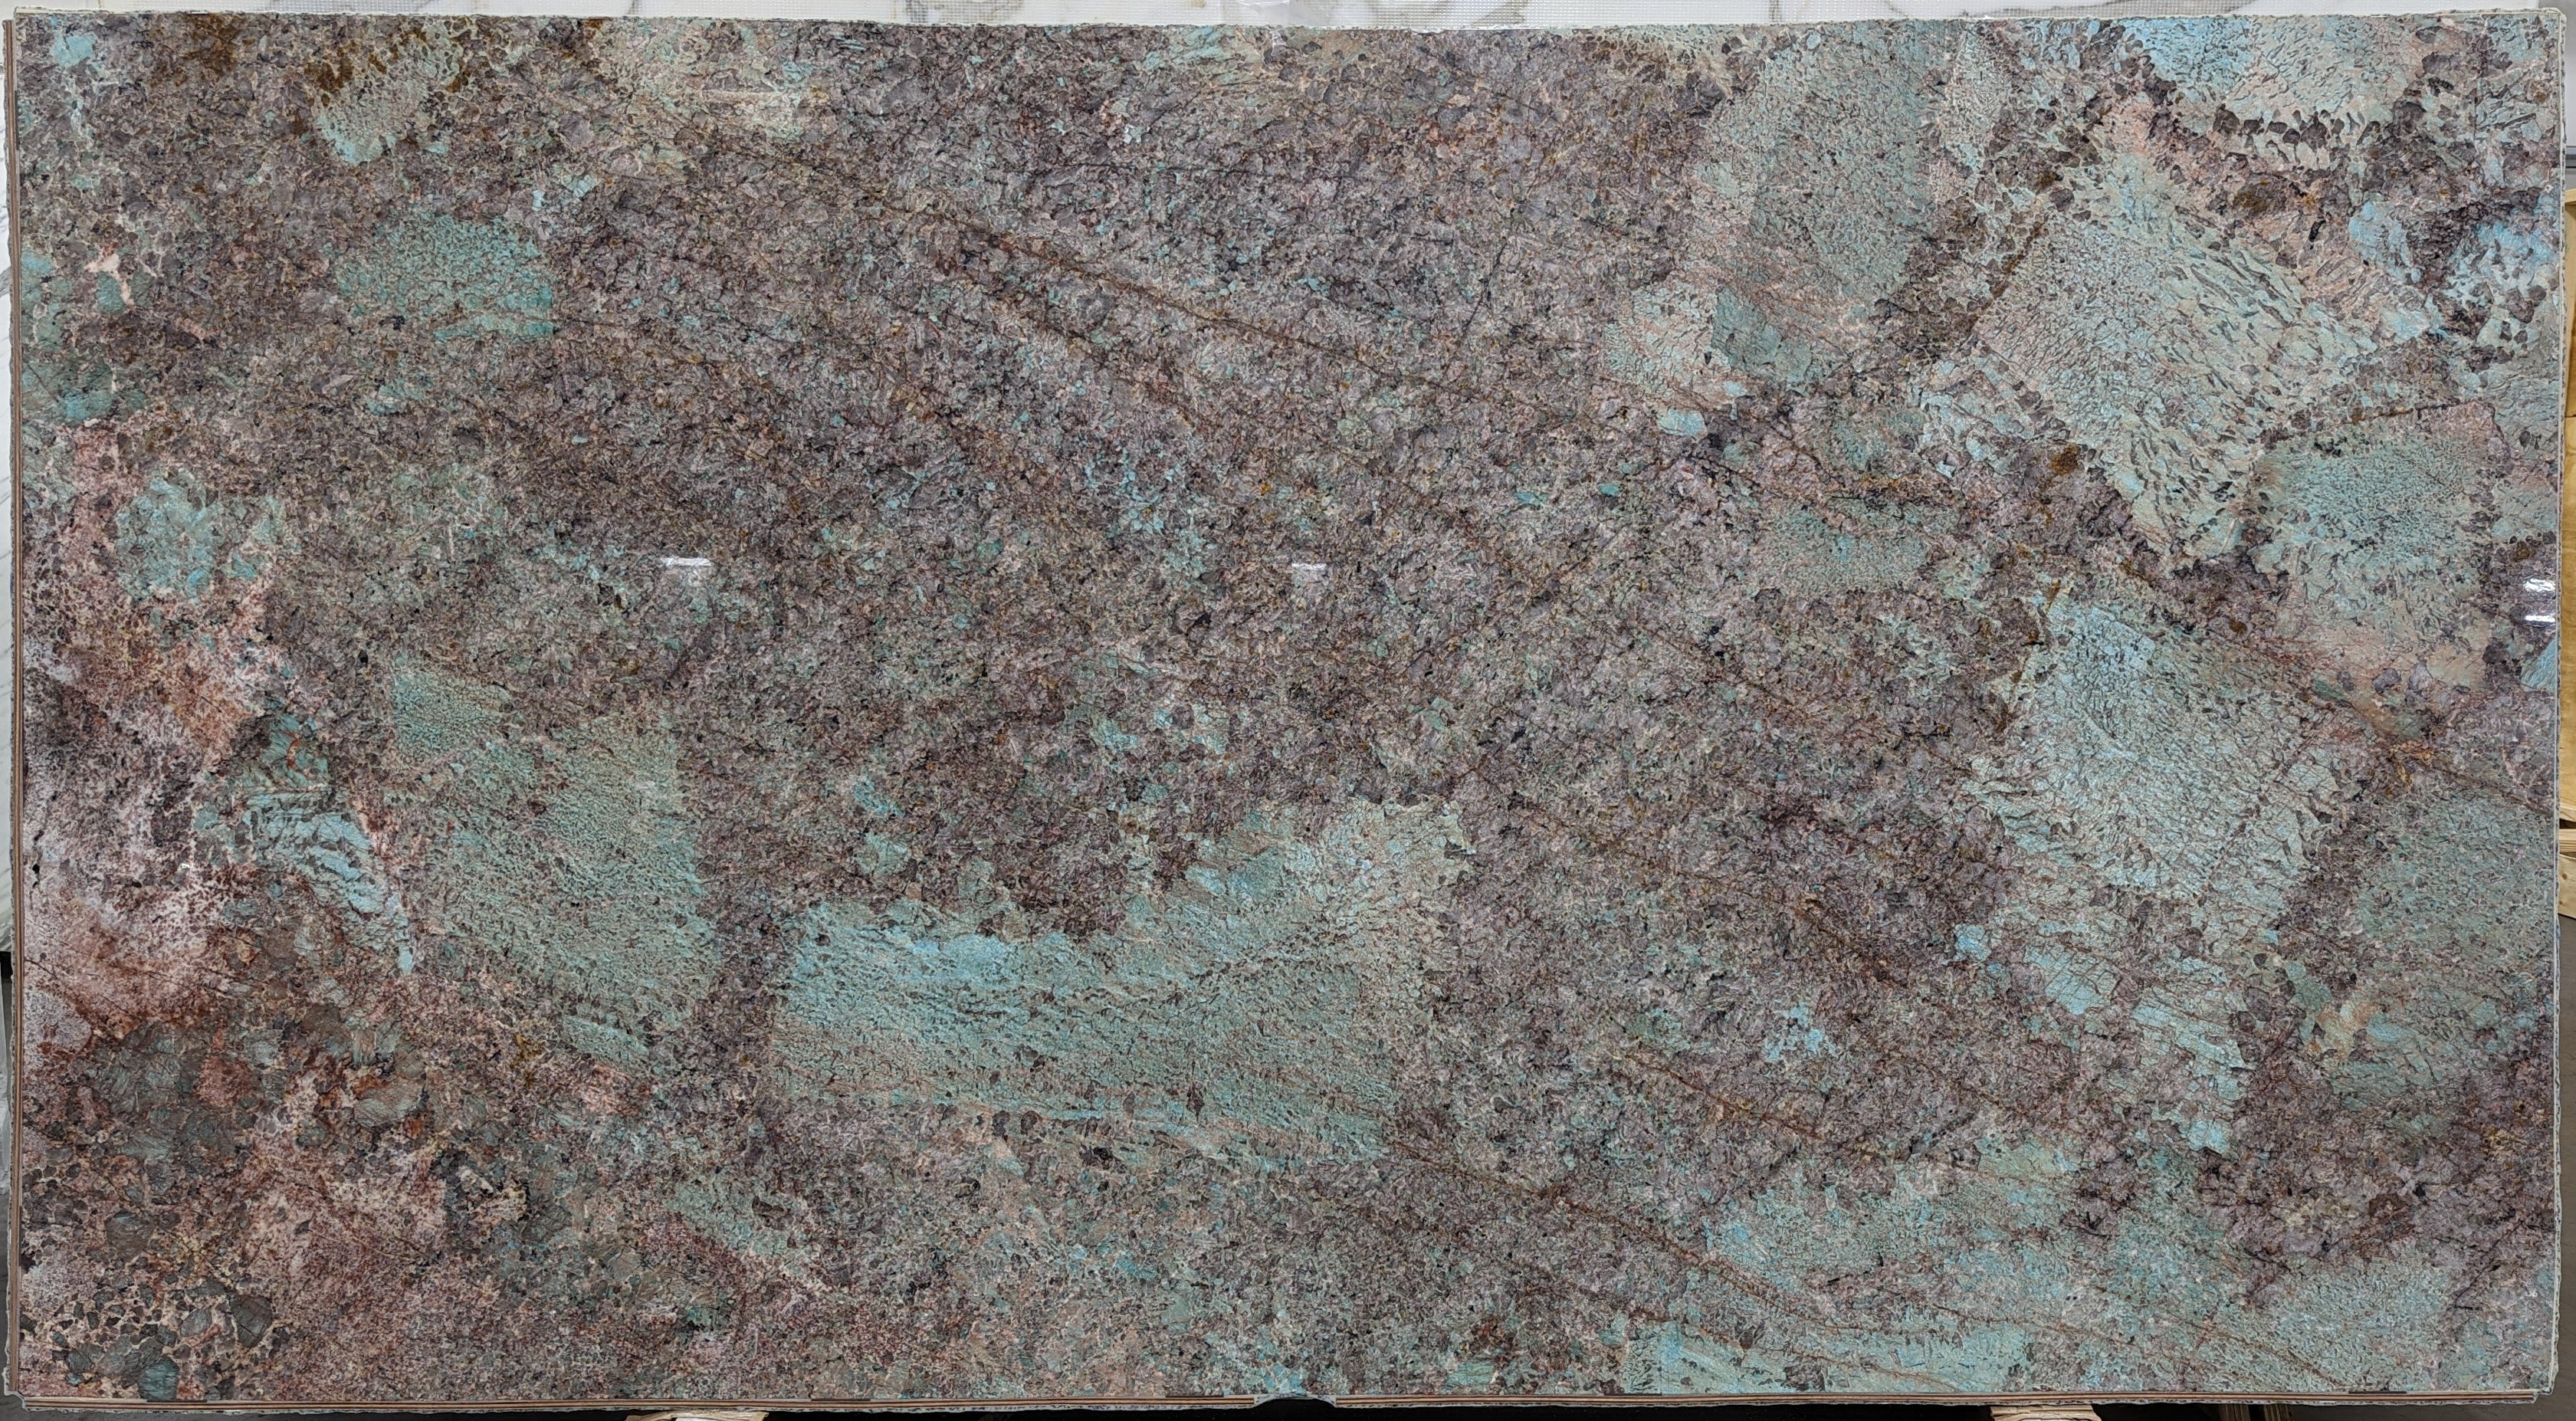  Amazonite Quartzite Slab 3/4  Polished Stone - 20921#35 -  64X119 